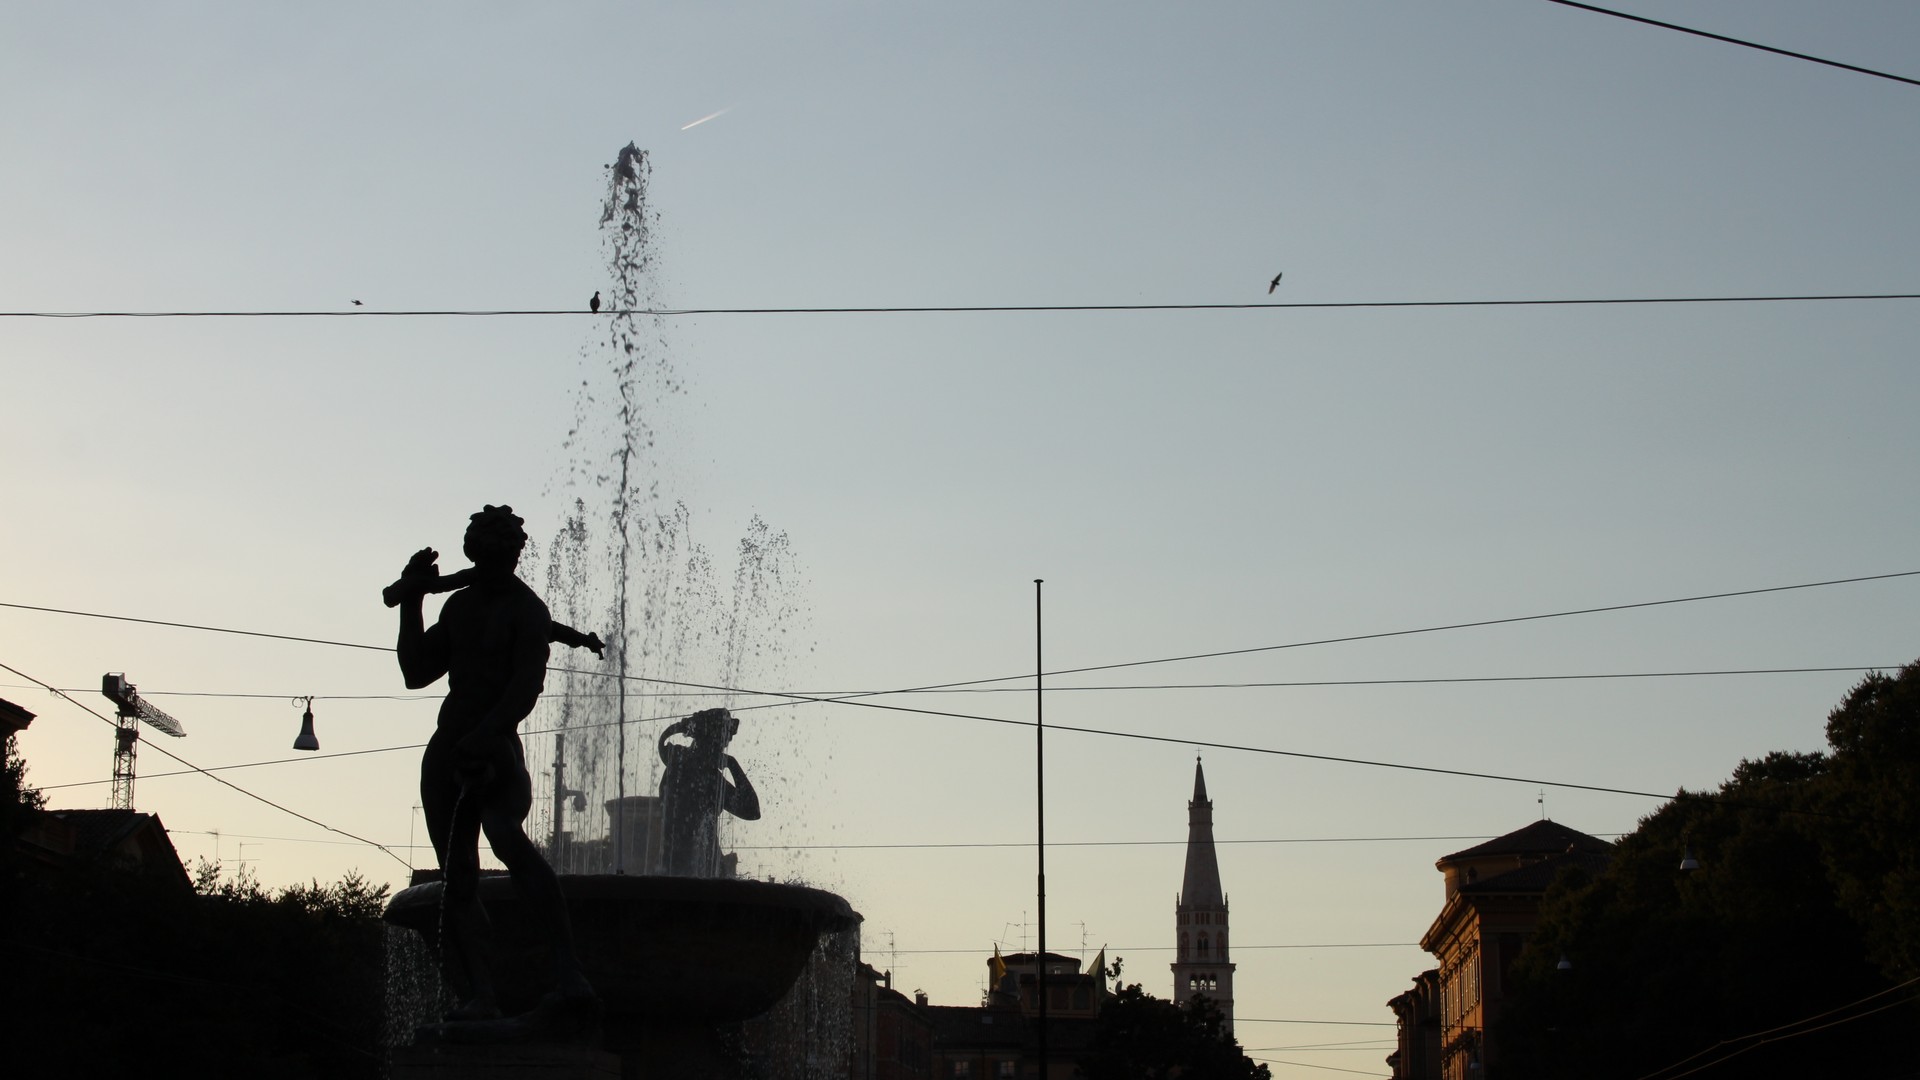 Un bellissimo primo piano su una delle fontane più belle di tutta Modena con le statue in risalto davanti e dietro lo spruzzo d'acqua. Sullo sfondo si vede il campanile a punta di una chiesa.